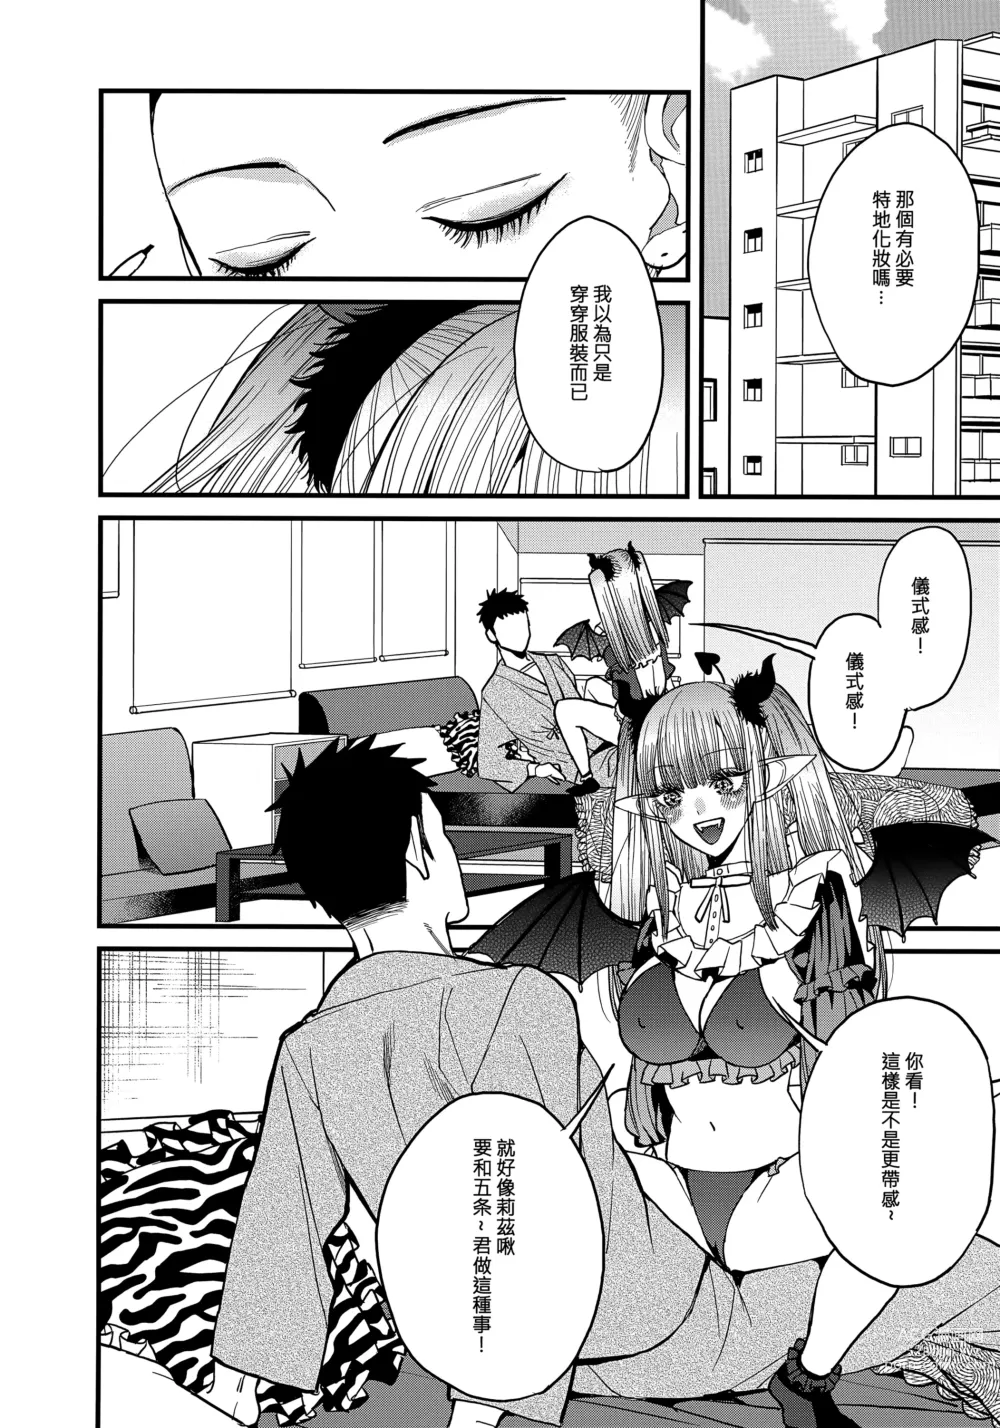 Page 11 of doujinshi Koi 2 (decensored)